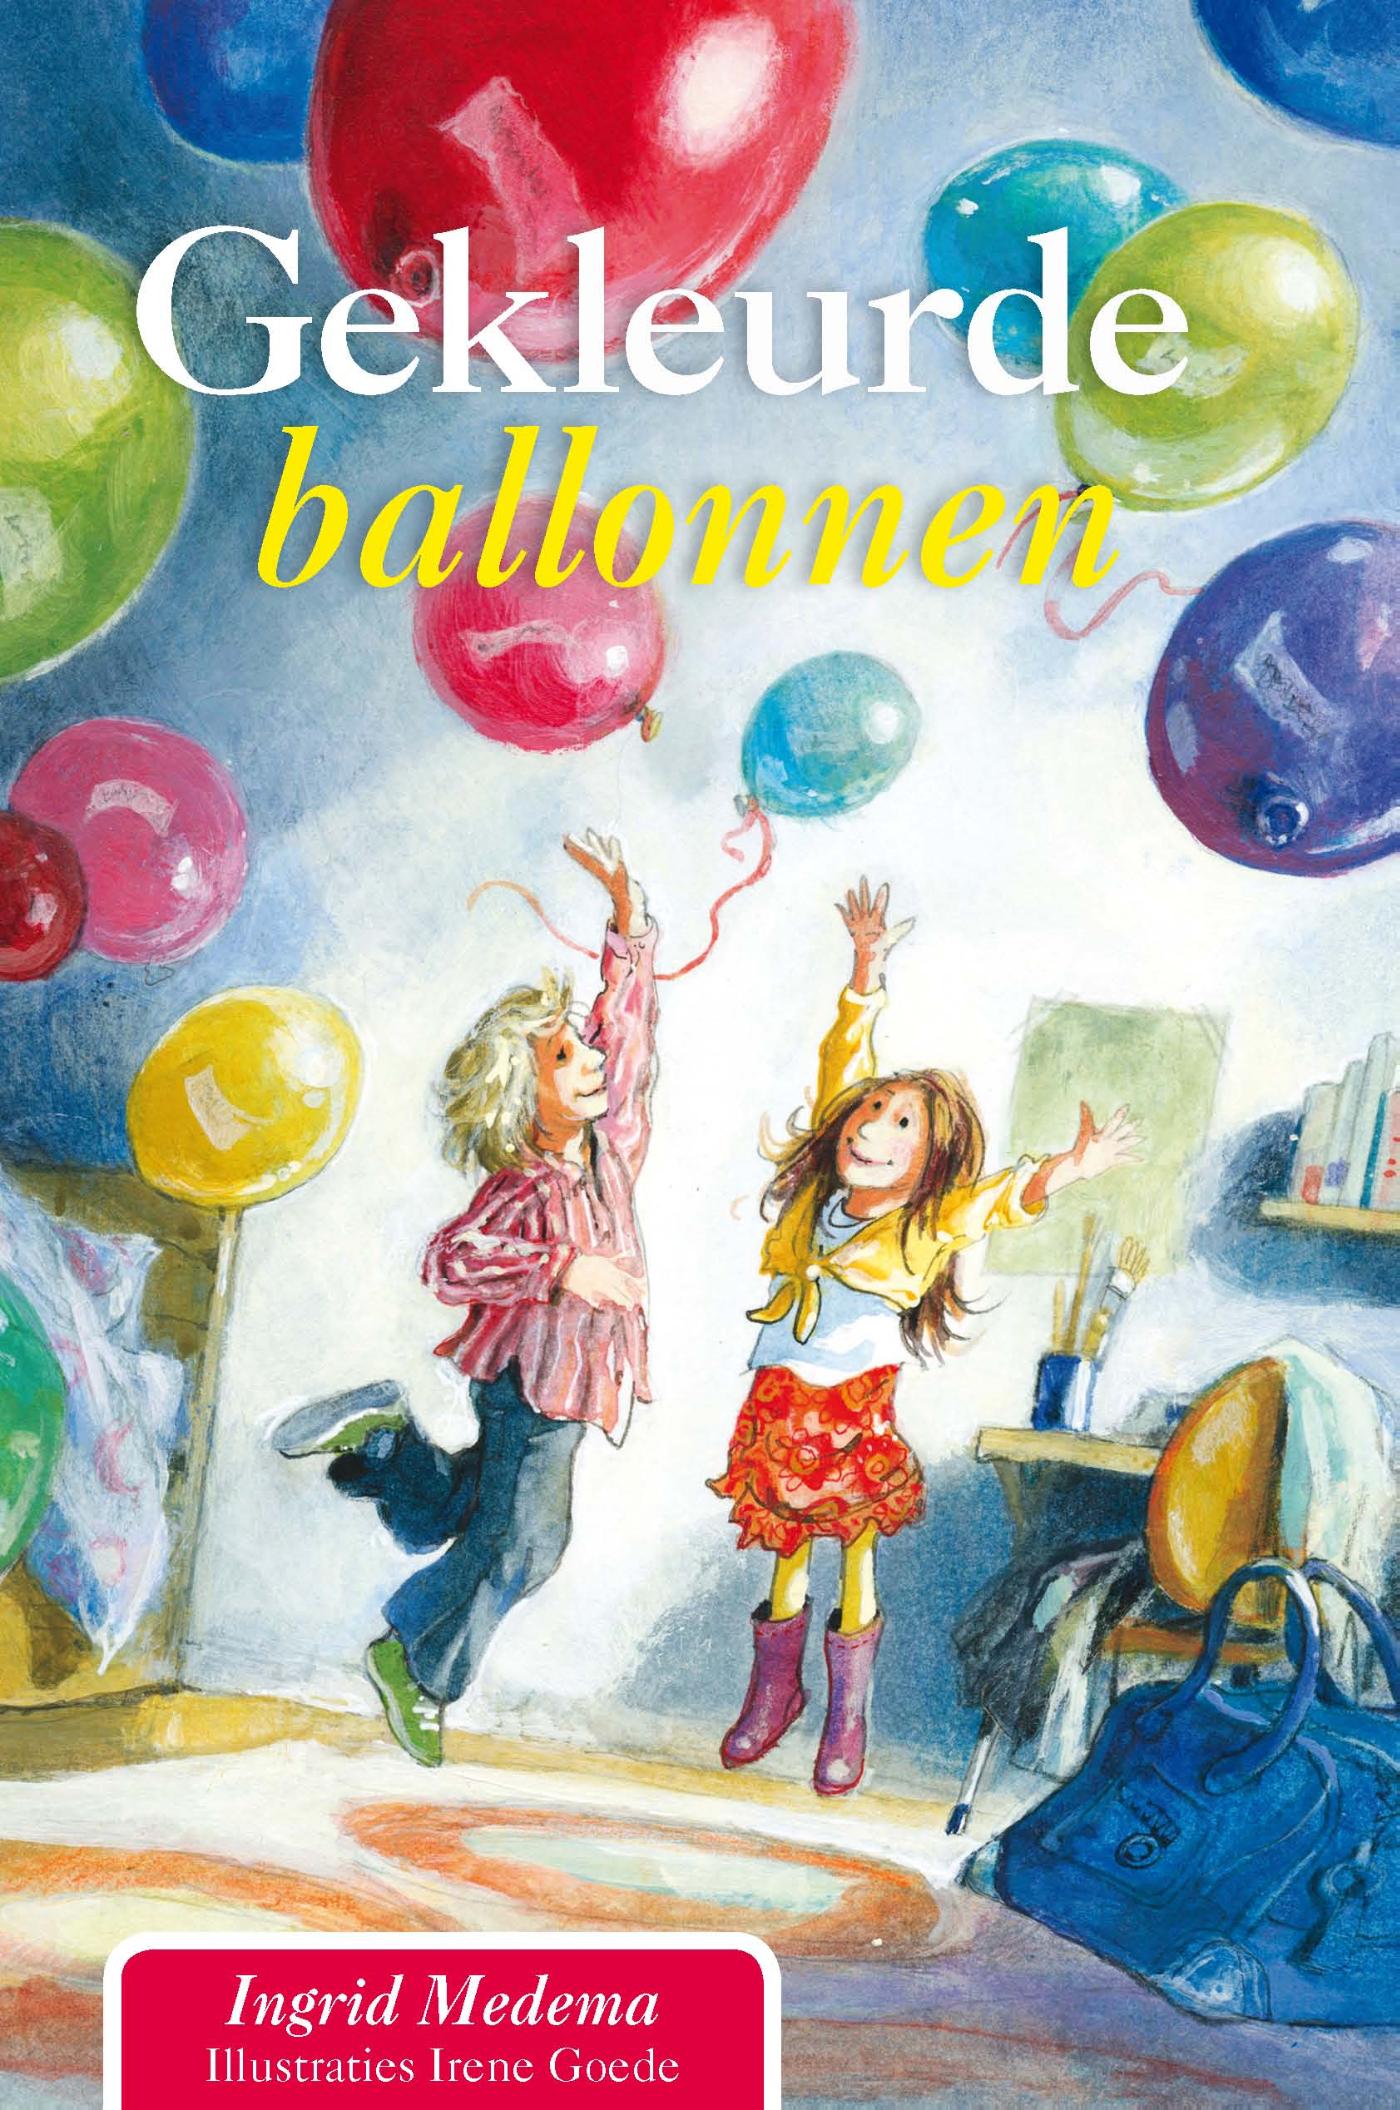 Gekleurde ballonnen (Ebook)